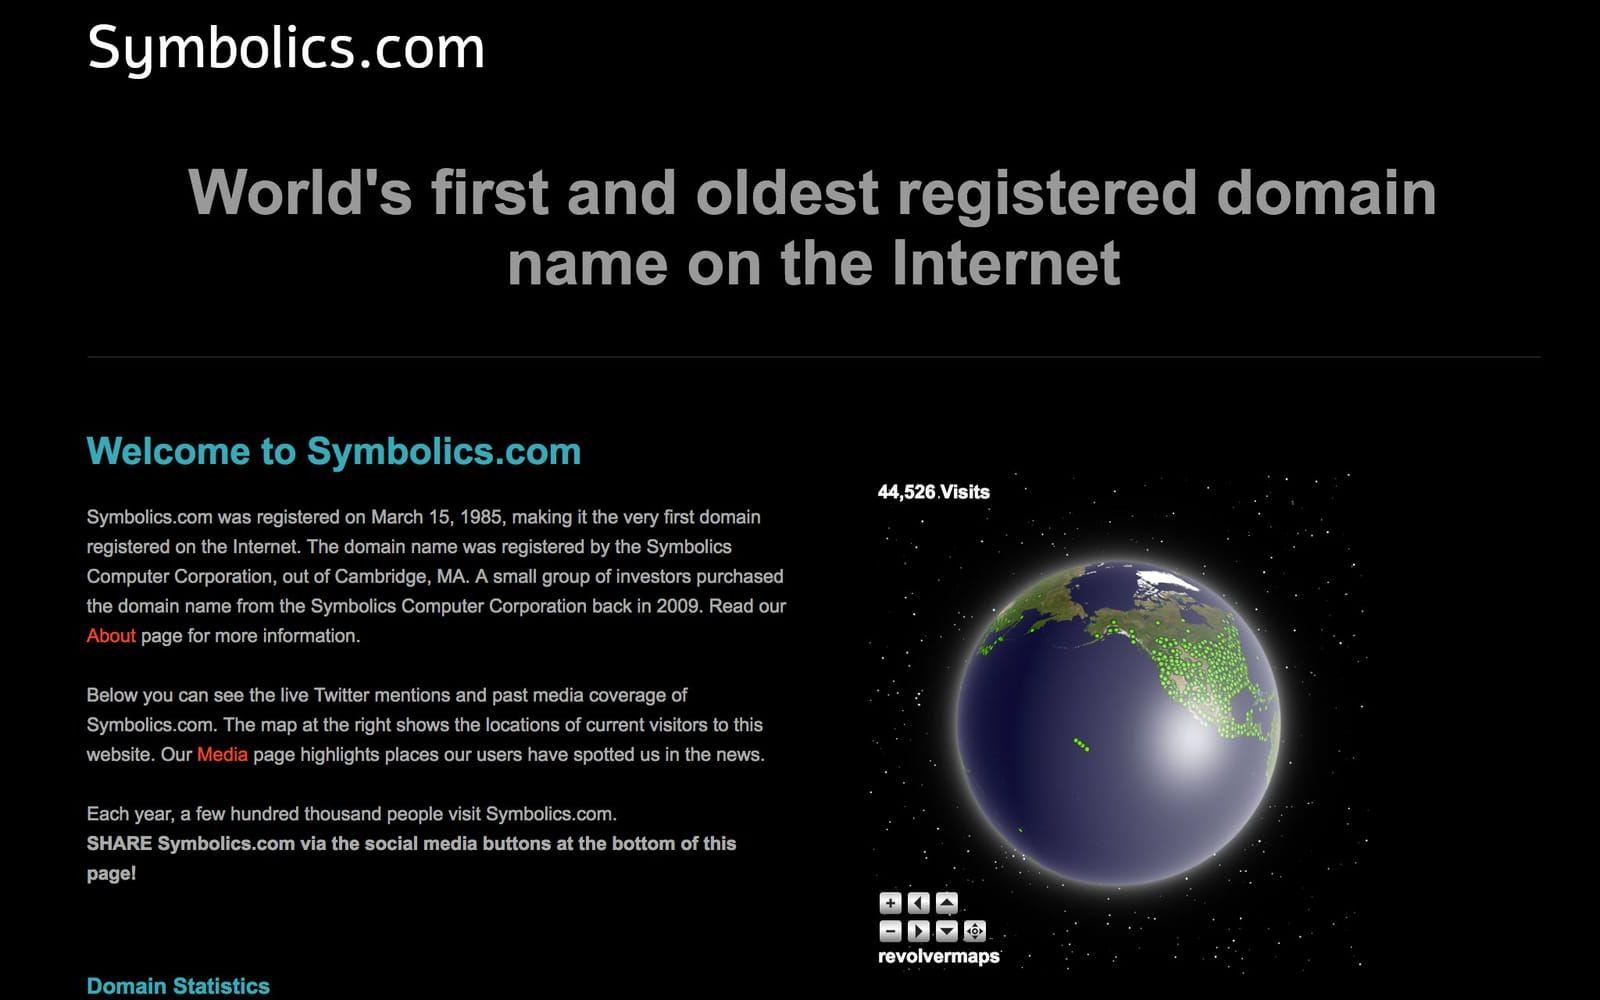 <strong>FÖRSTA .COM-DOMÄNEN.</strong>  Den allra första publika internet-domänen att registeras var <a href="http://www.symbolics.com" target="_blank">Symbolics.com</a>, den 15 mars 1985, av ett numera nedlagt dataföretag. Sidan finns kvar än i dag men fungerar mest som en slags minnessida. Efter Symbolics registrerades, i ordning, bbn.com (24 april, 1985), Think.com (24 maj, 1985) och mcc.com (11 juli, 1985).